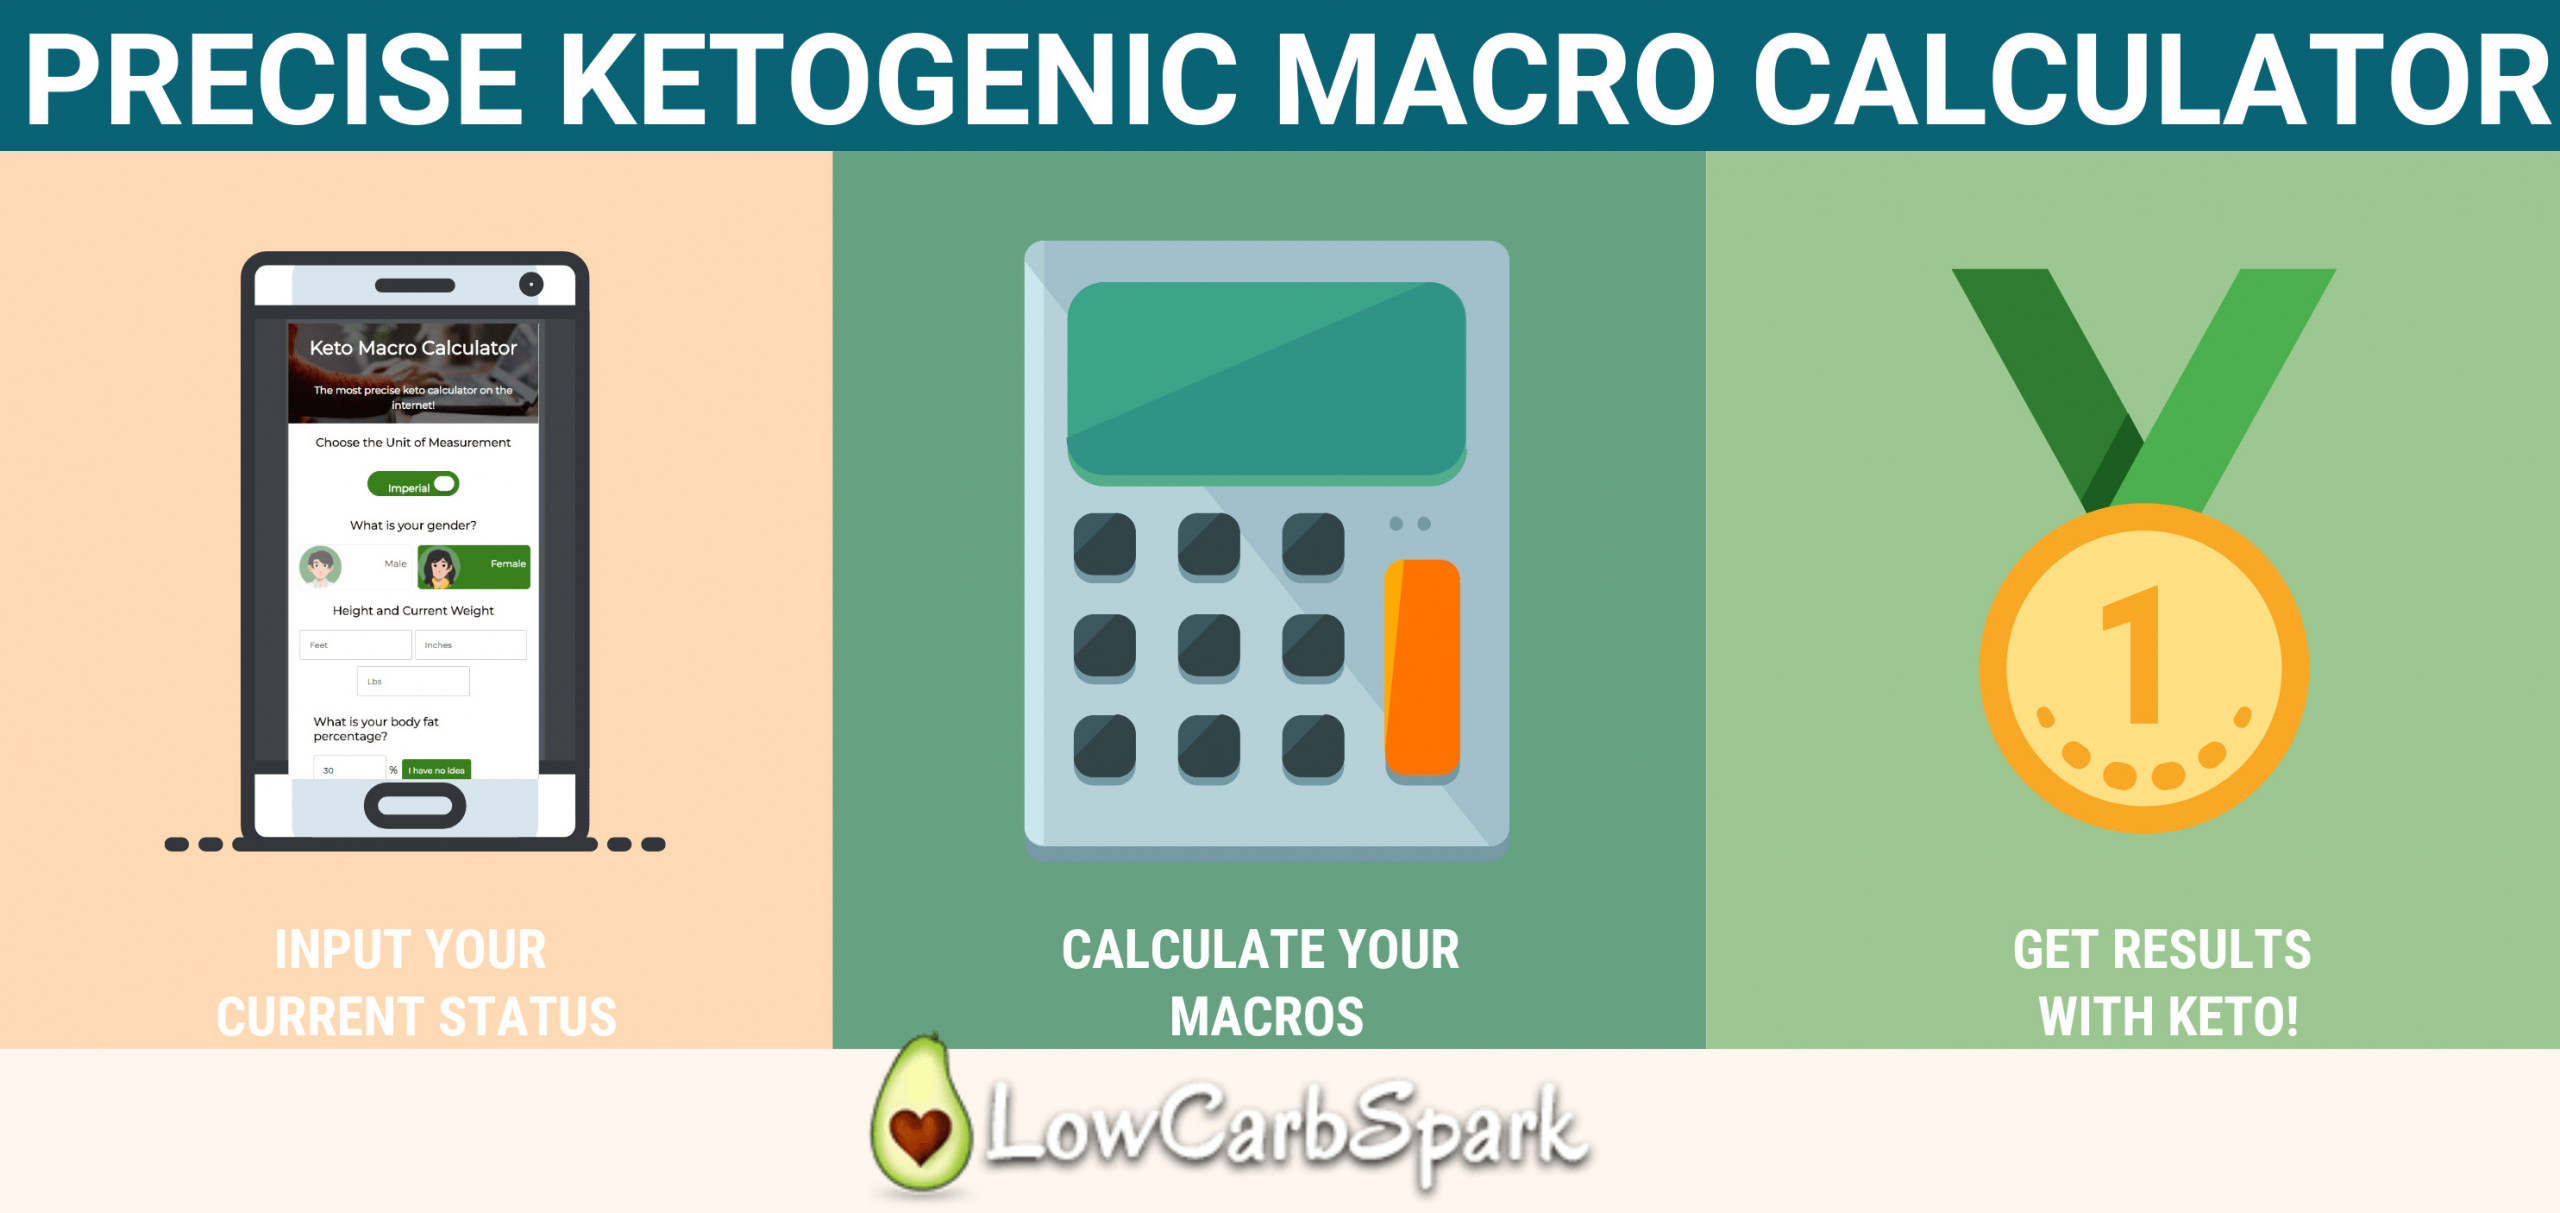 Keto Diet Macro Calculator
 Keto Calculator The Most Precise & Easy Way to Calculate